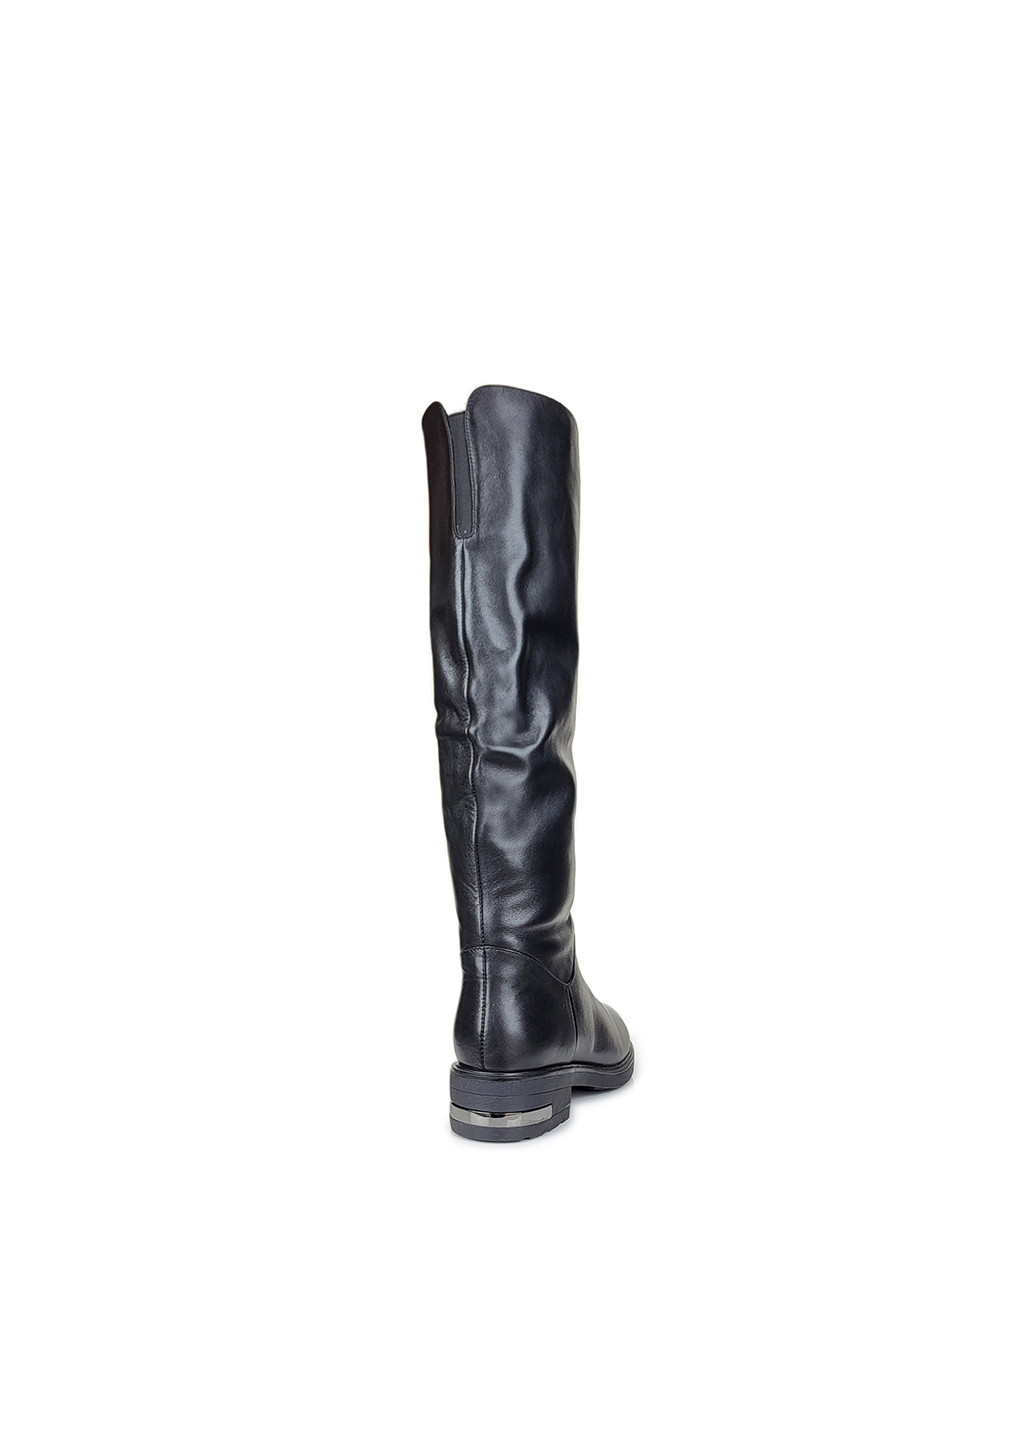 Черные осенние ботфорты женские кожаные черного цвета зимние,, h1101bh-c407, 39 Brocoli